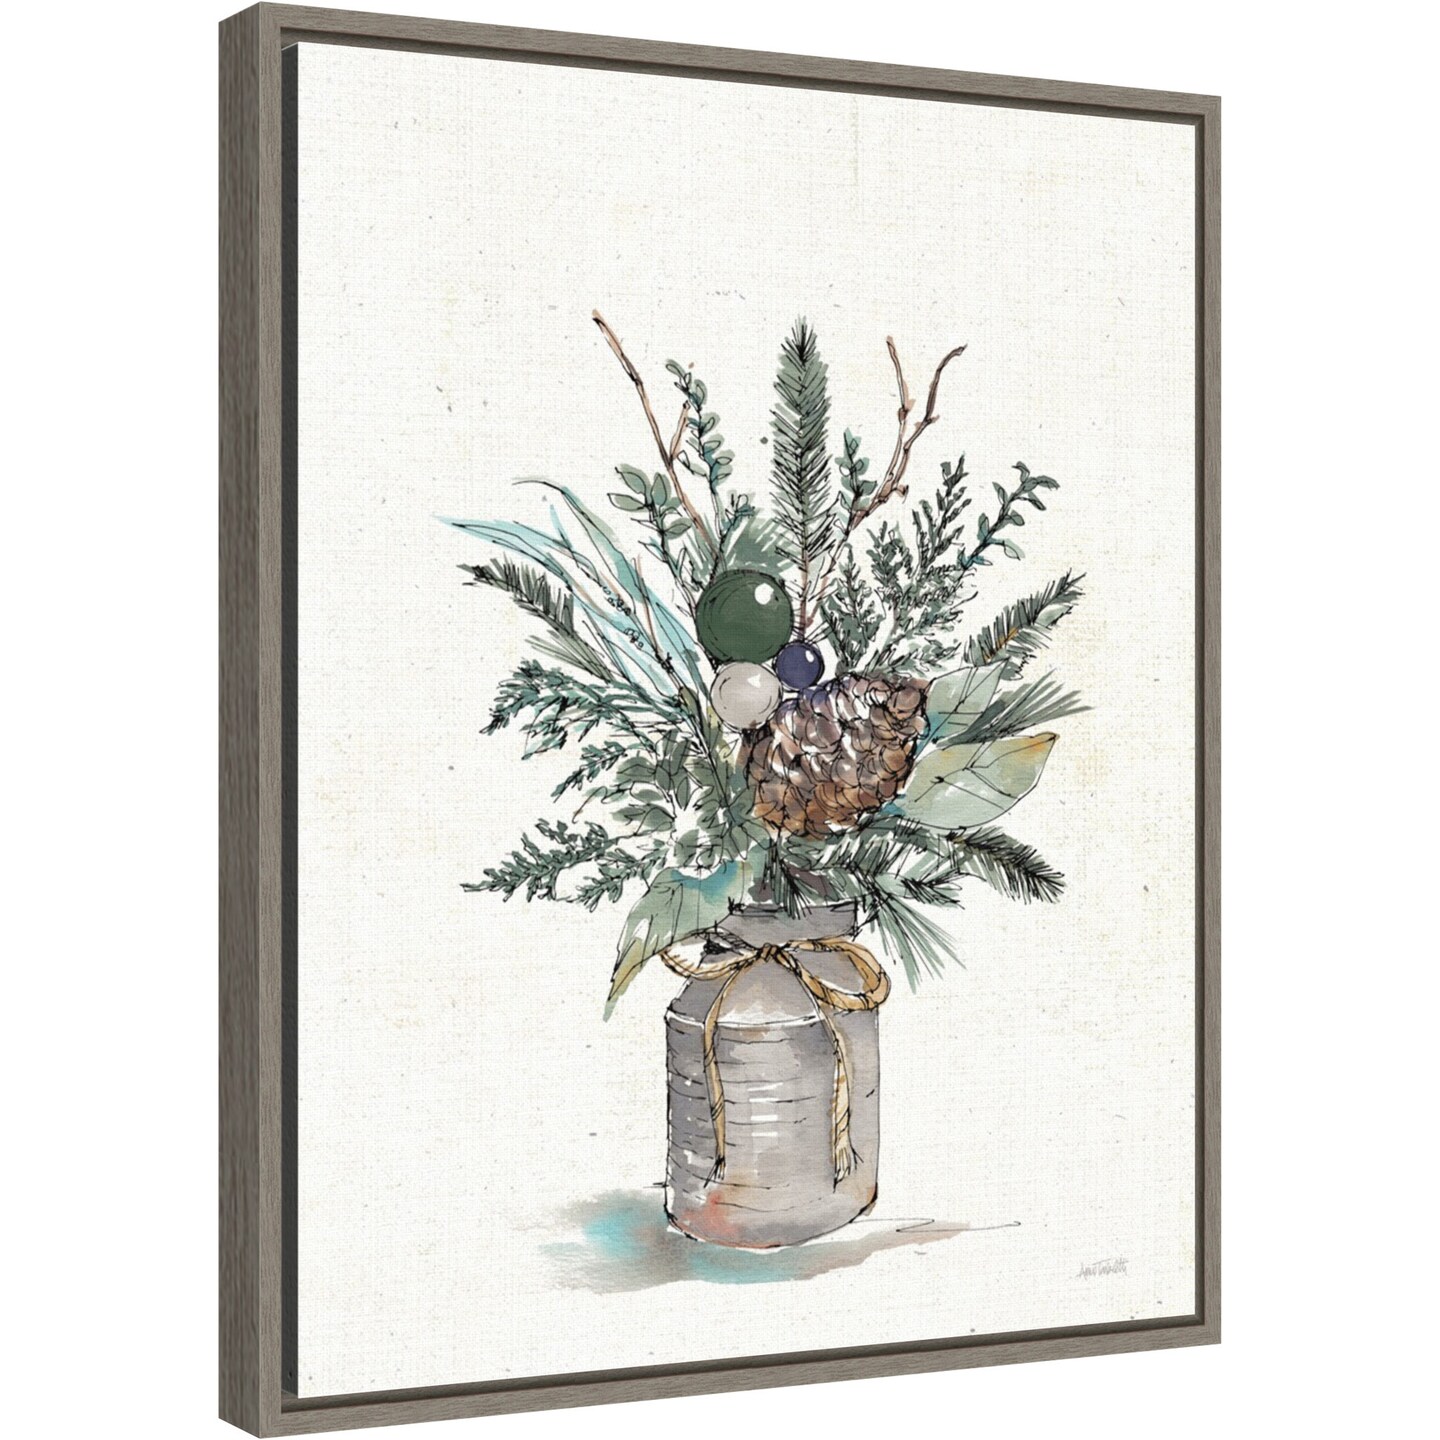 Seasonal Charm Greenery I (Christmas Vase) by Anne Tavoletti 16-in. W x 20-in. H. Canvas Wall Art Print Framed in Grey